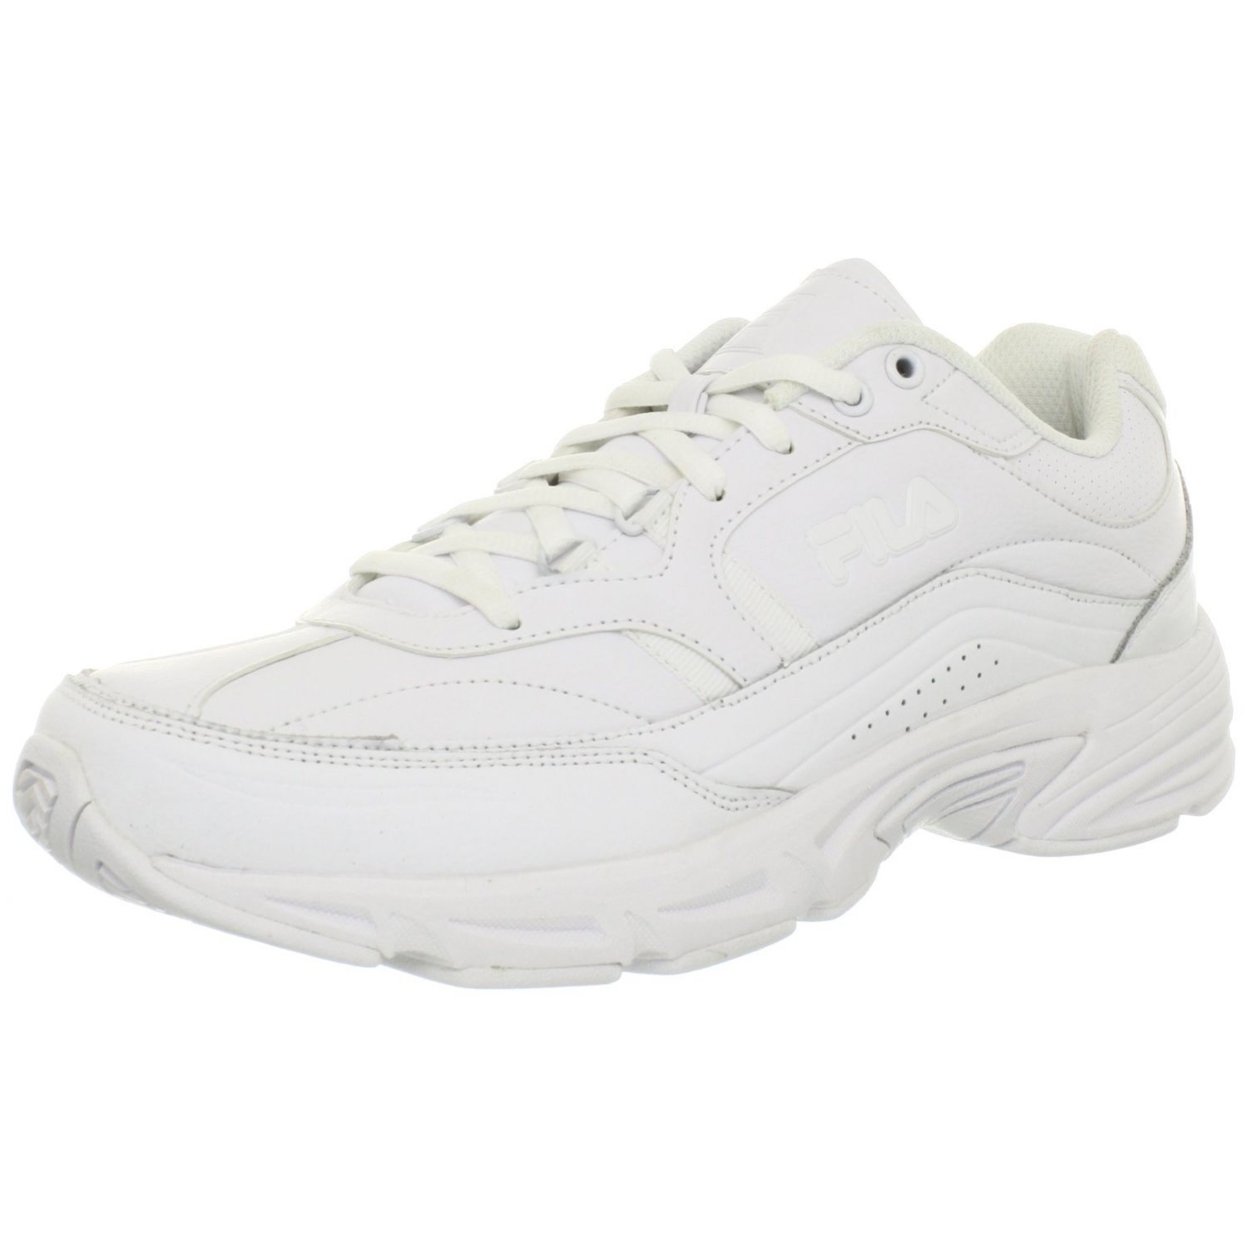 Fila Men's Memory Workshift-m Shoes M US Men WHT/WHT/WHT - White/White/White, 9